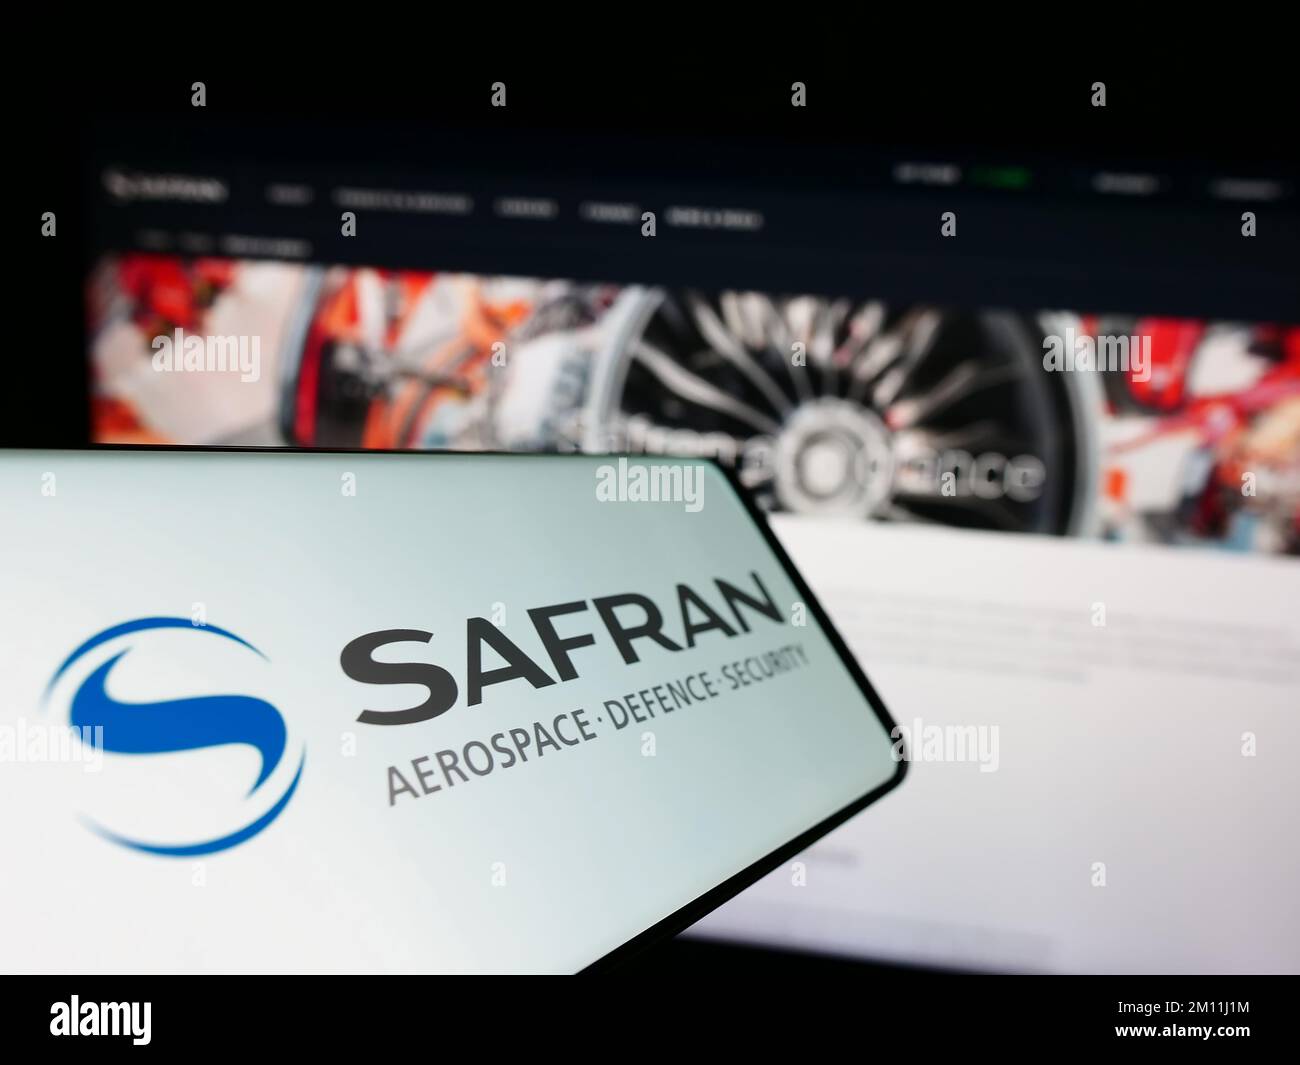 Cellulare con il logo della società aerospaziale francese Safran S.A. sullo schermo di fronte al sito web aziendale. Messa a fuoco al centro a sinistra del display del telefono. Foto Stock